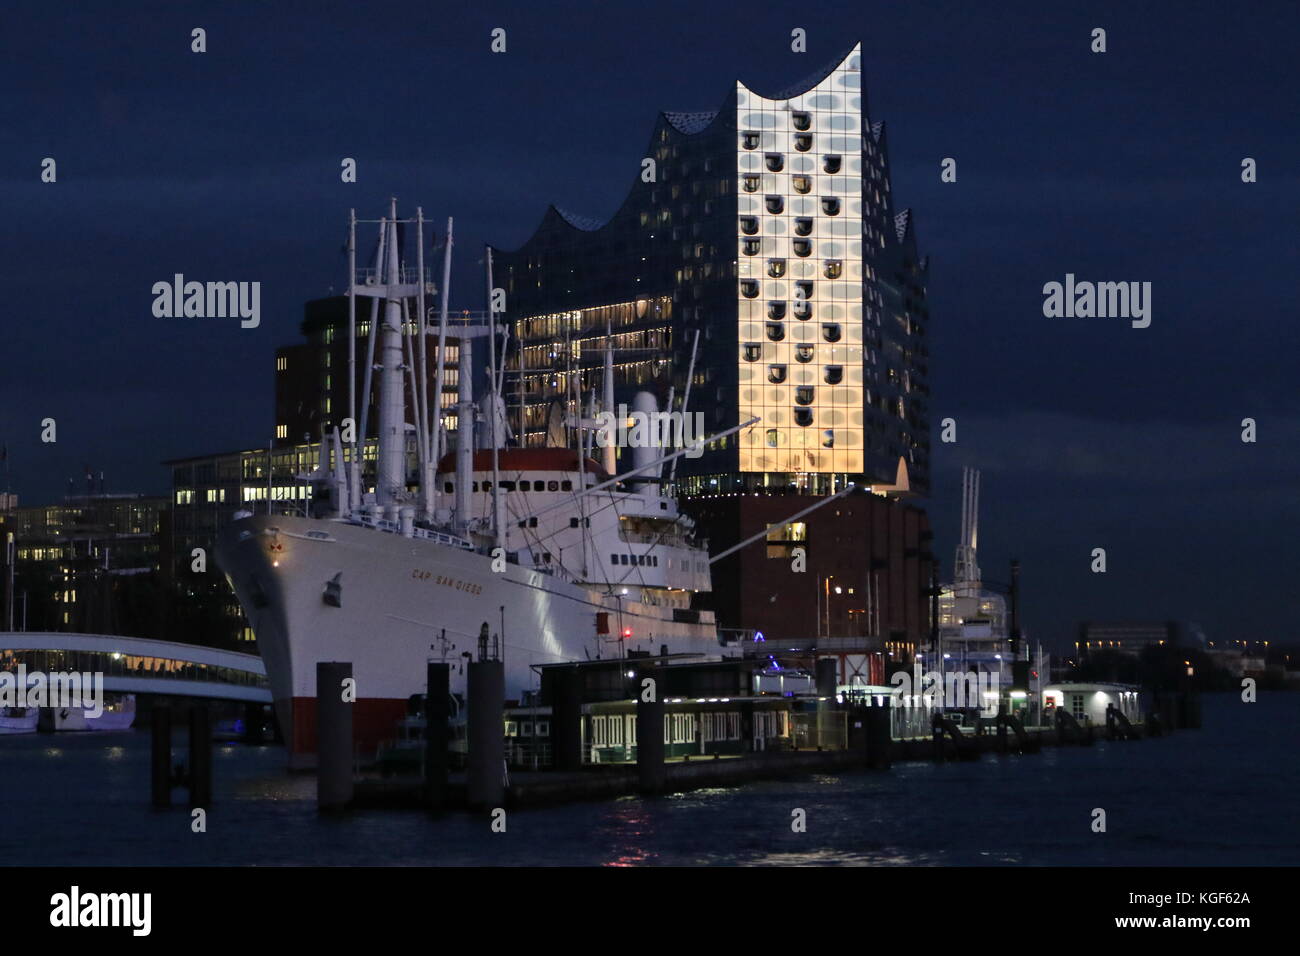 Hamburg, Deutschland. 6 Nov, 2017. elbphilharmonie, die im Dunkeln leuchten während der dramatischen Sonnenuntergang im Hafen von Hamburg, Deutschland, 06.11.2017. Quelle: t. Marke/alamy leben Nachrichten Stockfoto